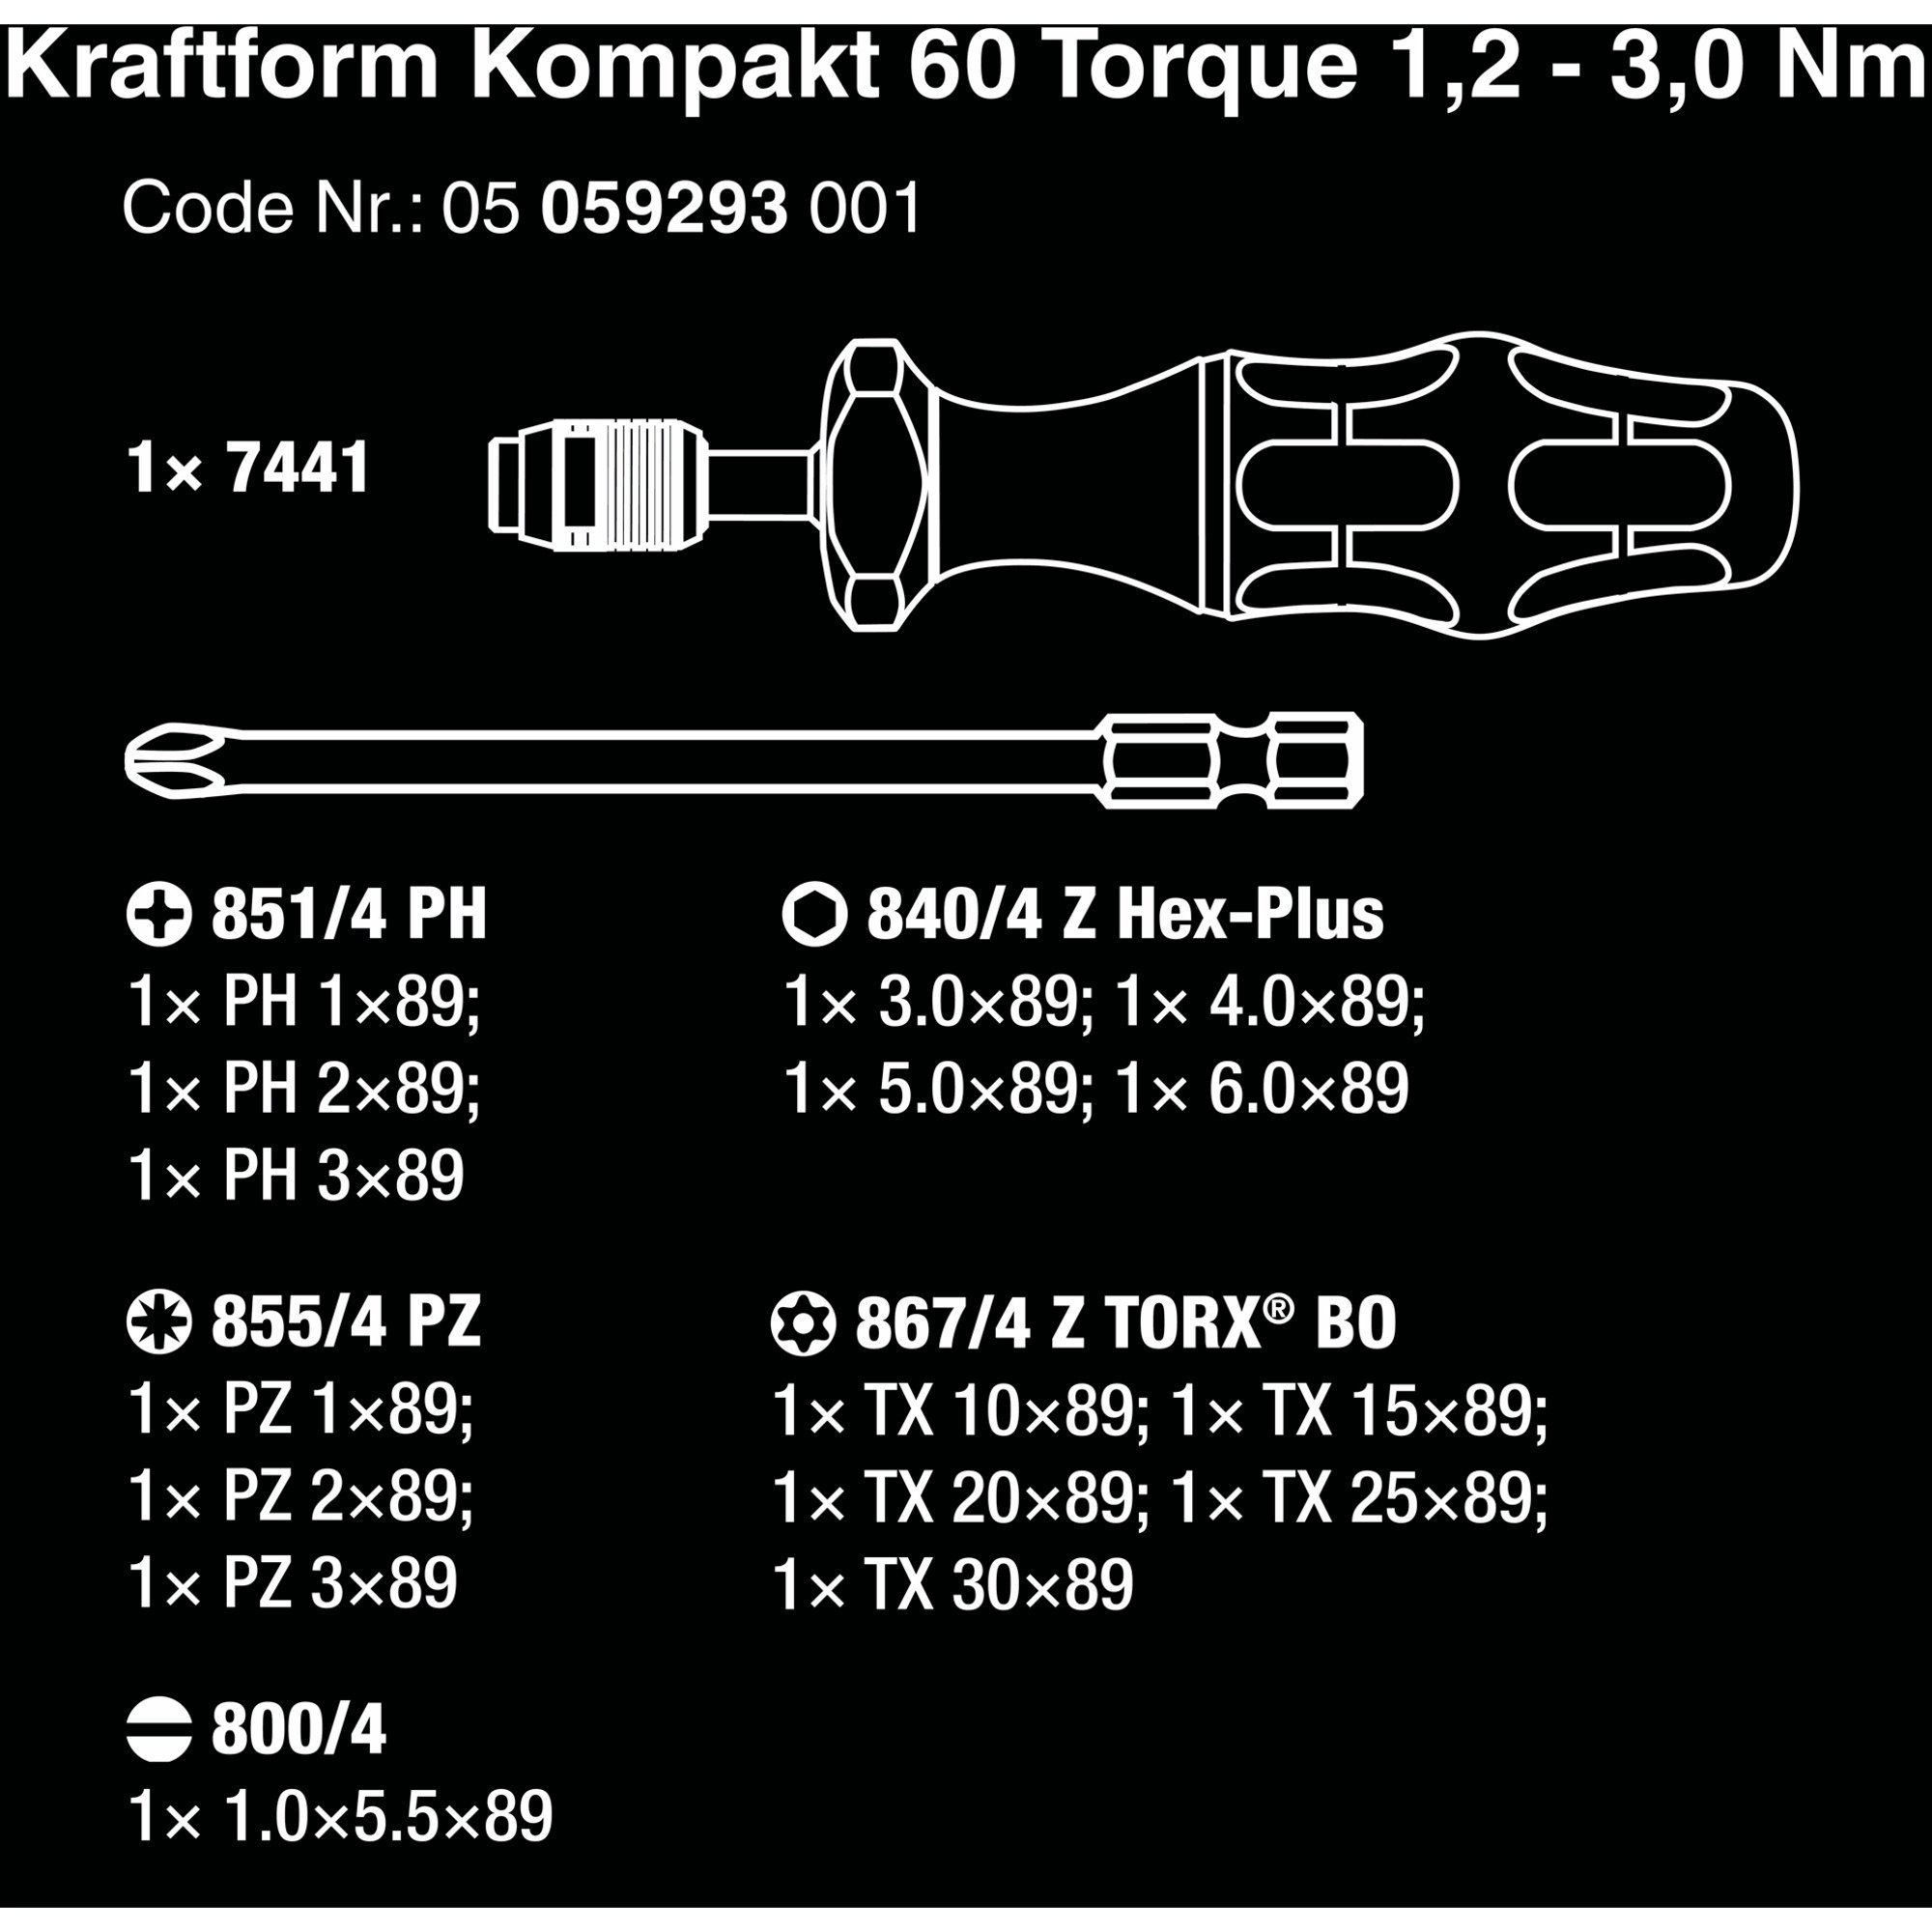 Wera Drehmomentschlüssel 1,2-3,0Nm 60 Torque Kraftform Kompakt Wera